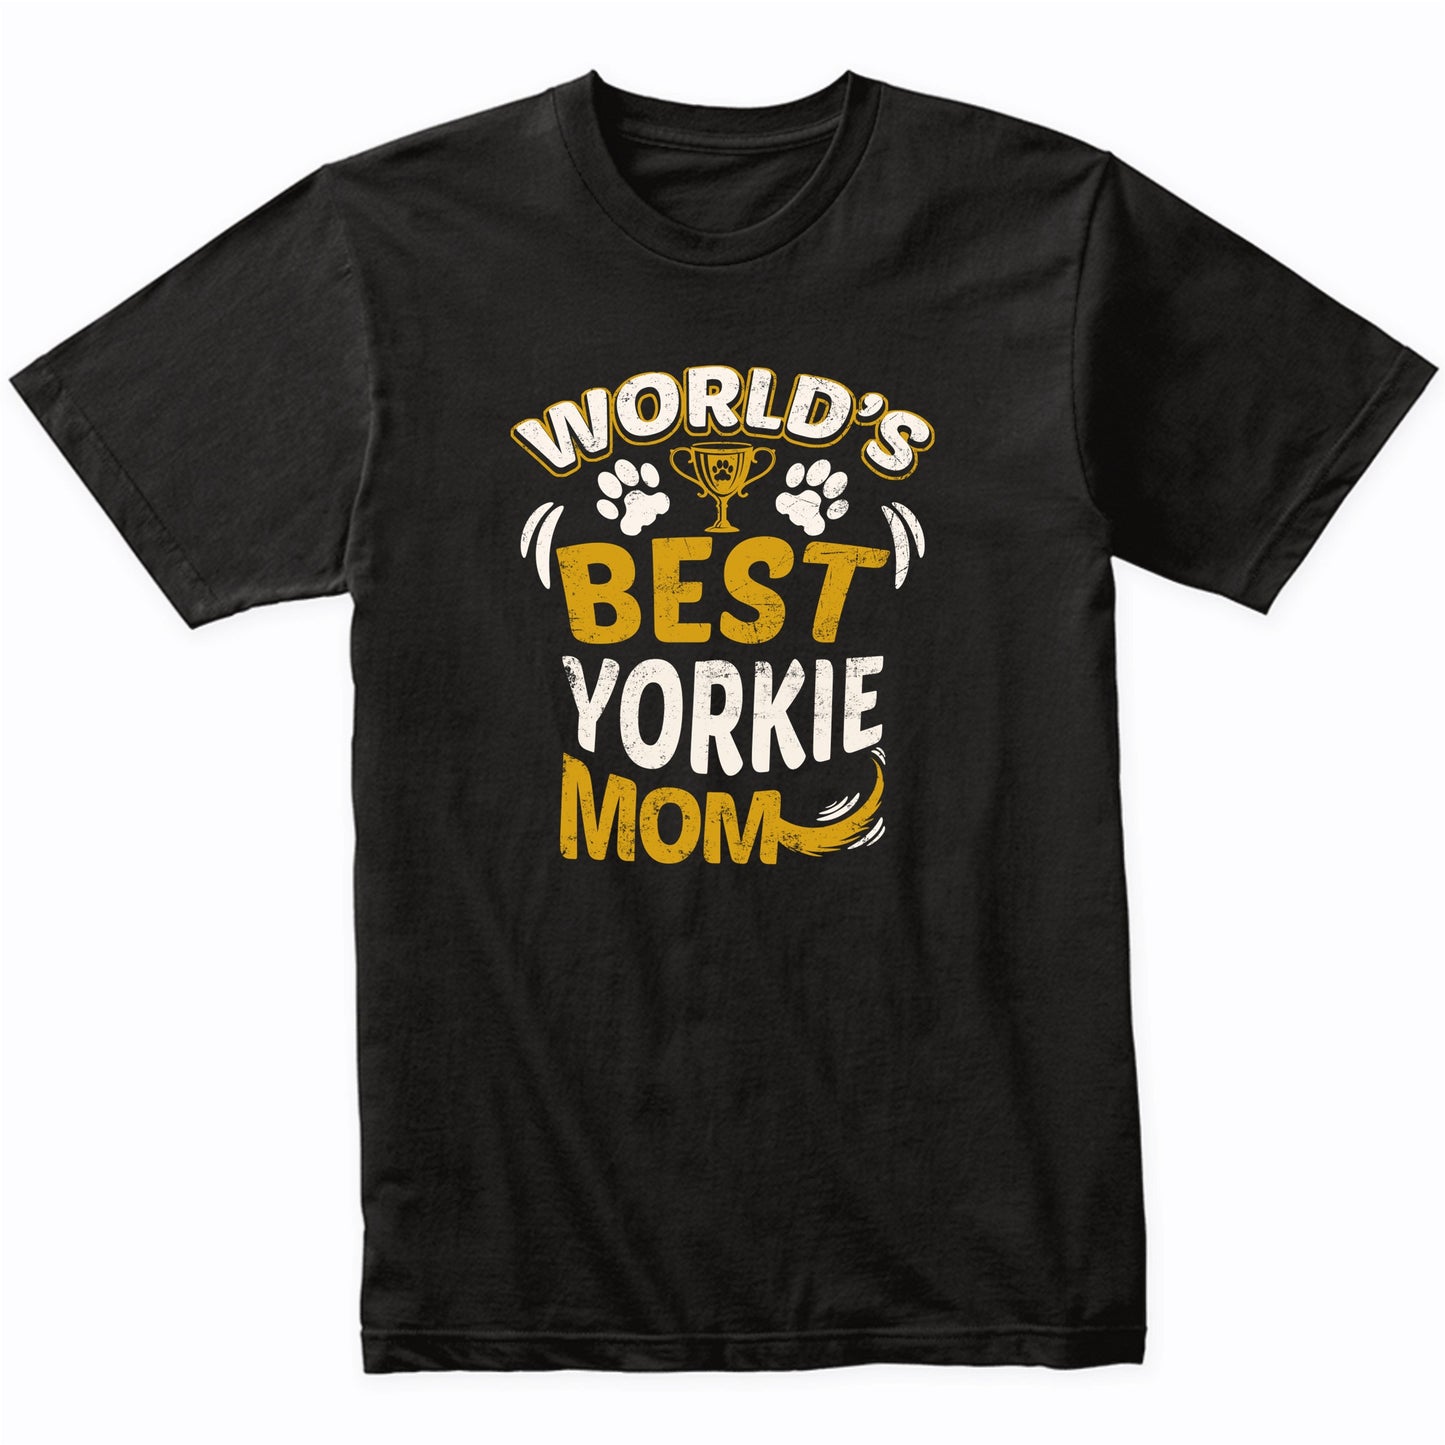 World's Best Yorkie Mom Graphic T-Shirt